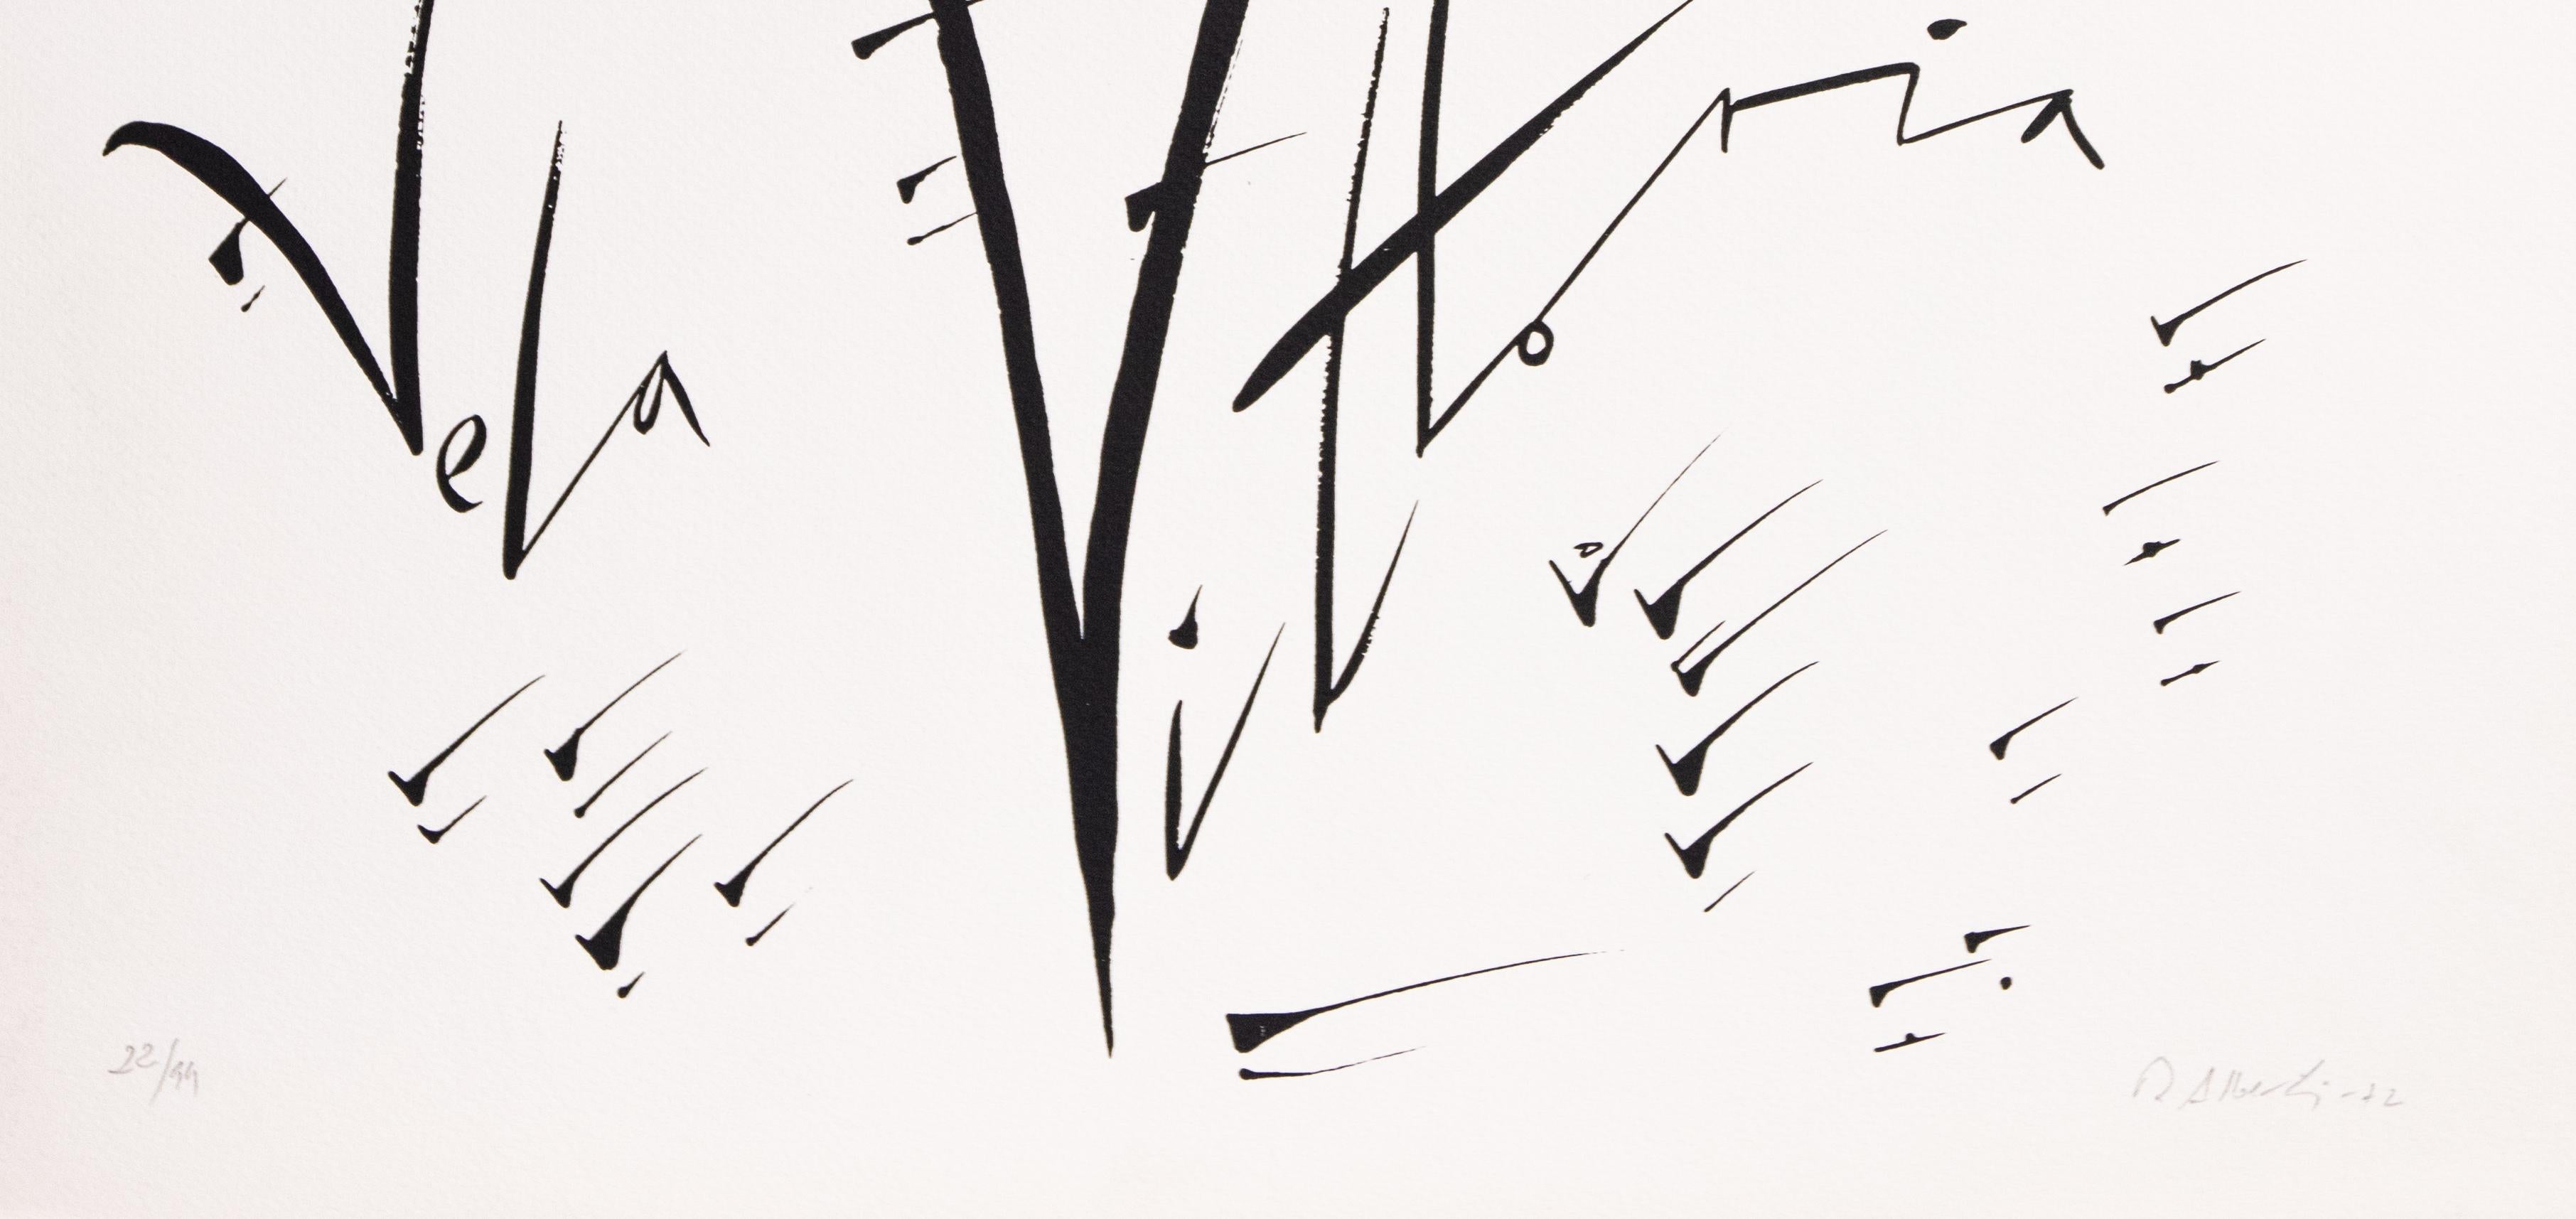 Letter V - Original Lithograph by Rafael Alberti - 1972 For Sale 1